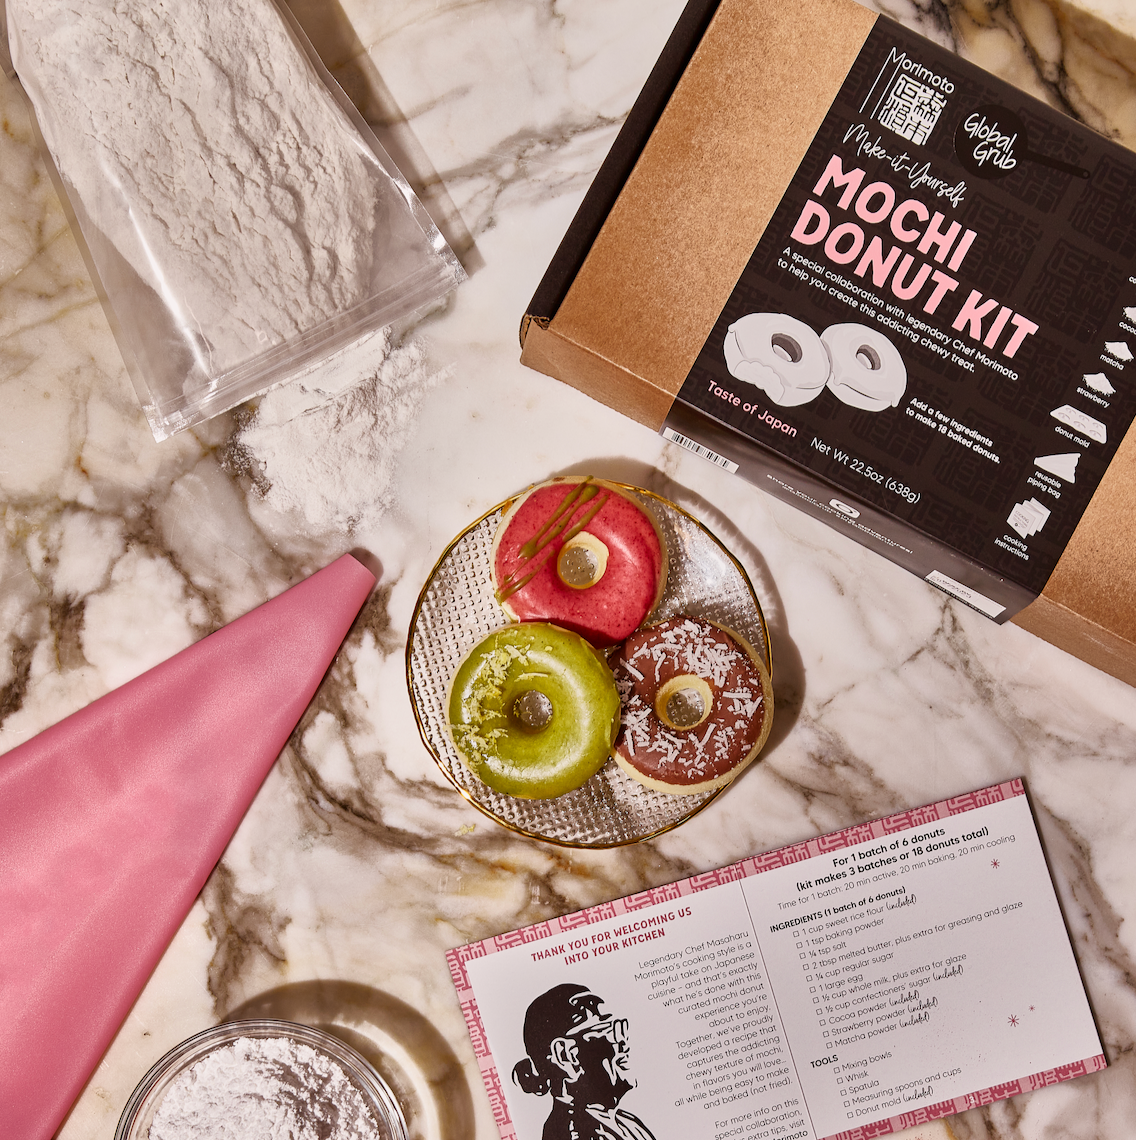  Global Grub DIY Mochi Ice Cream Kit - Mochi Kit